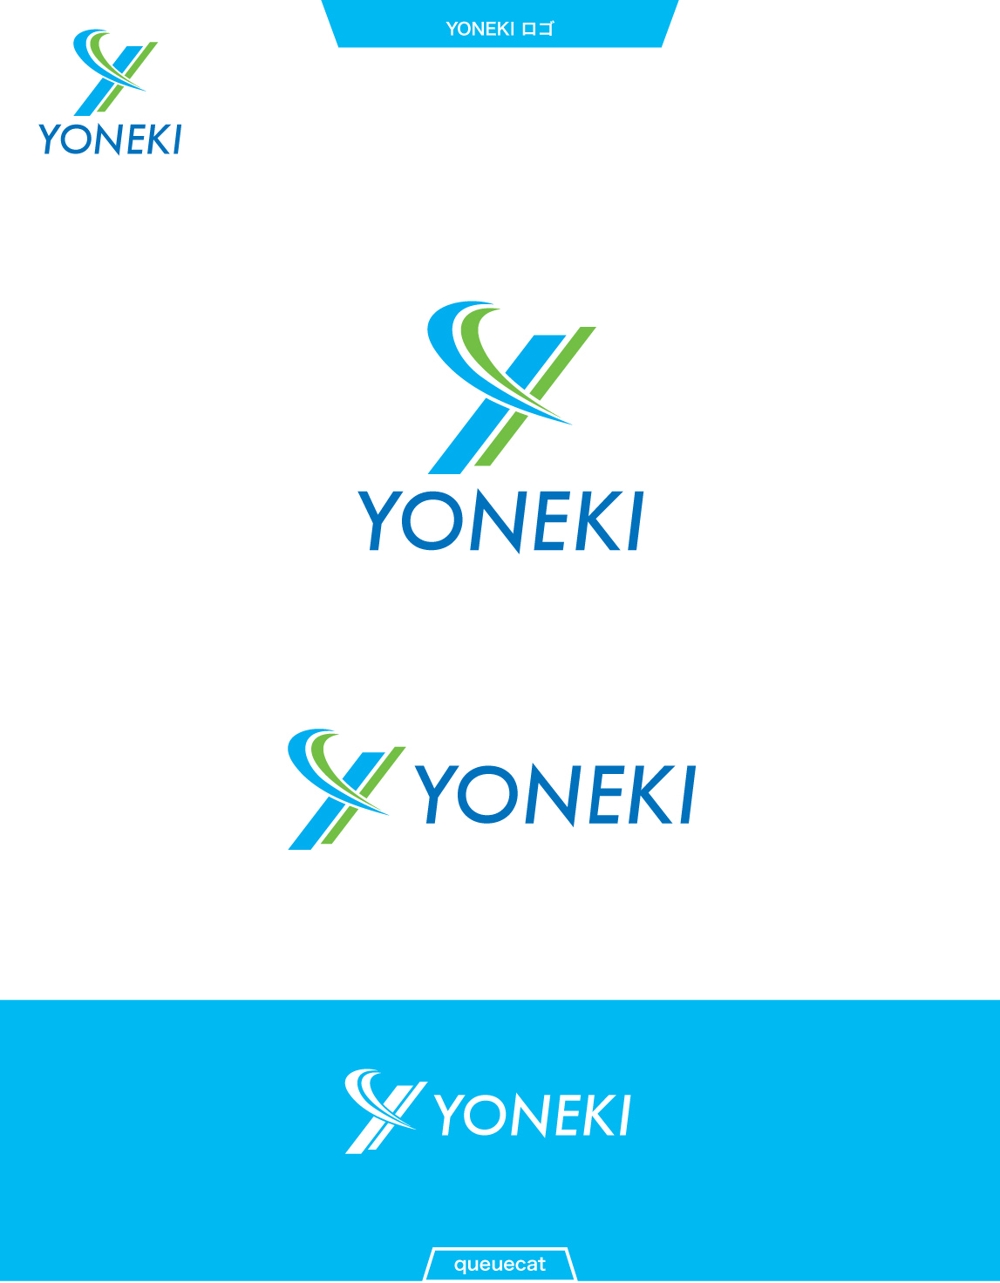 YONEKI1_1.jpg